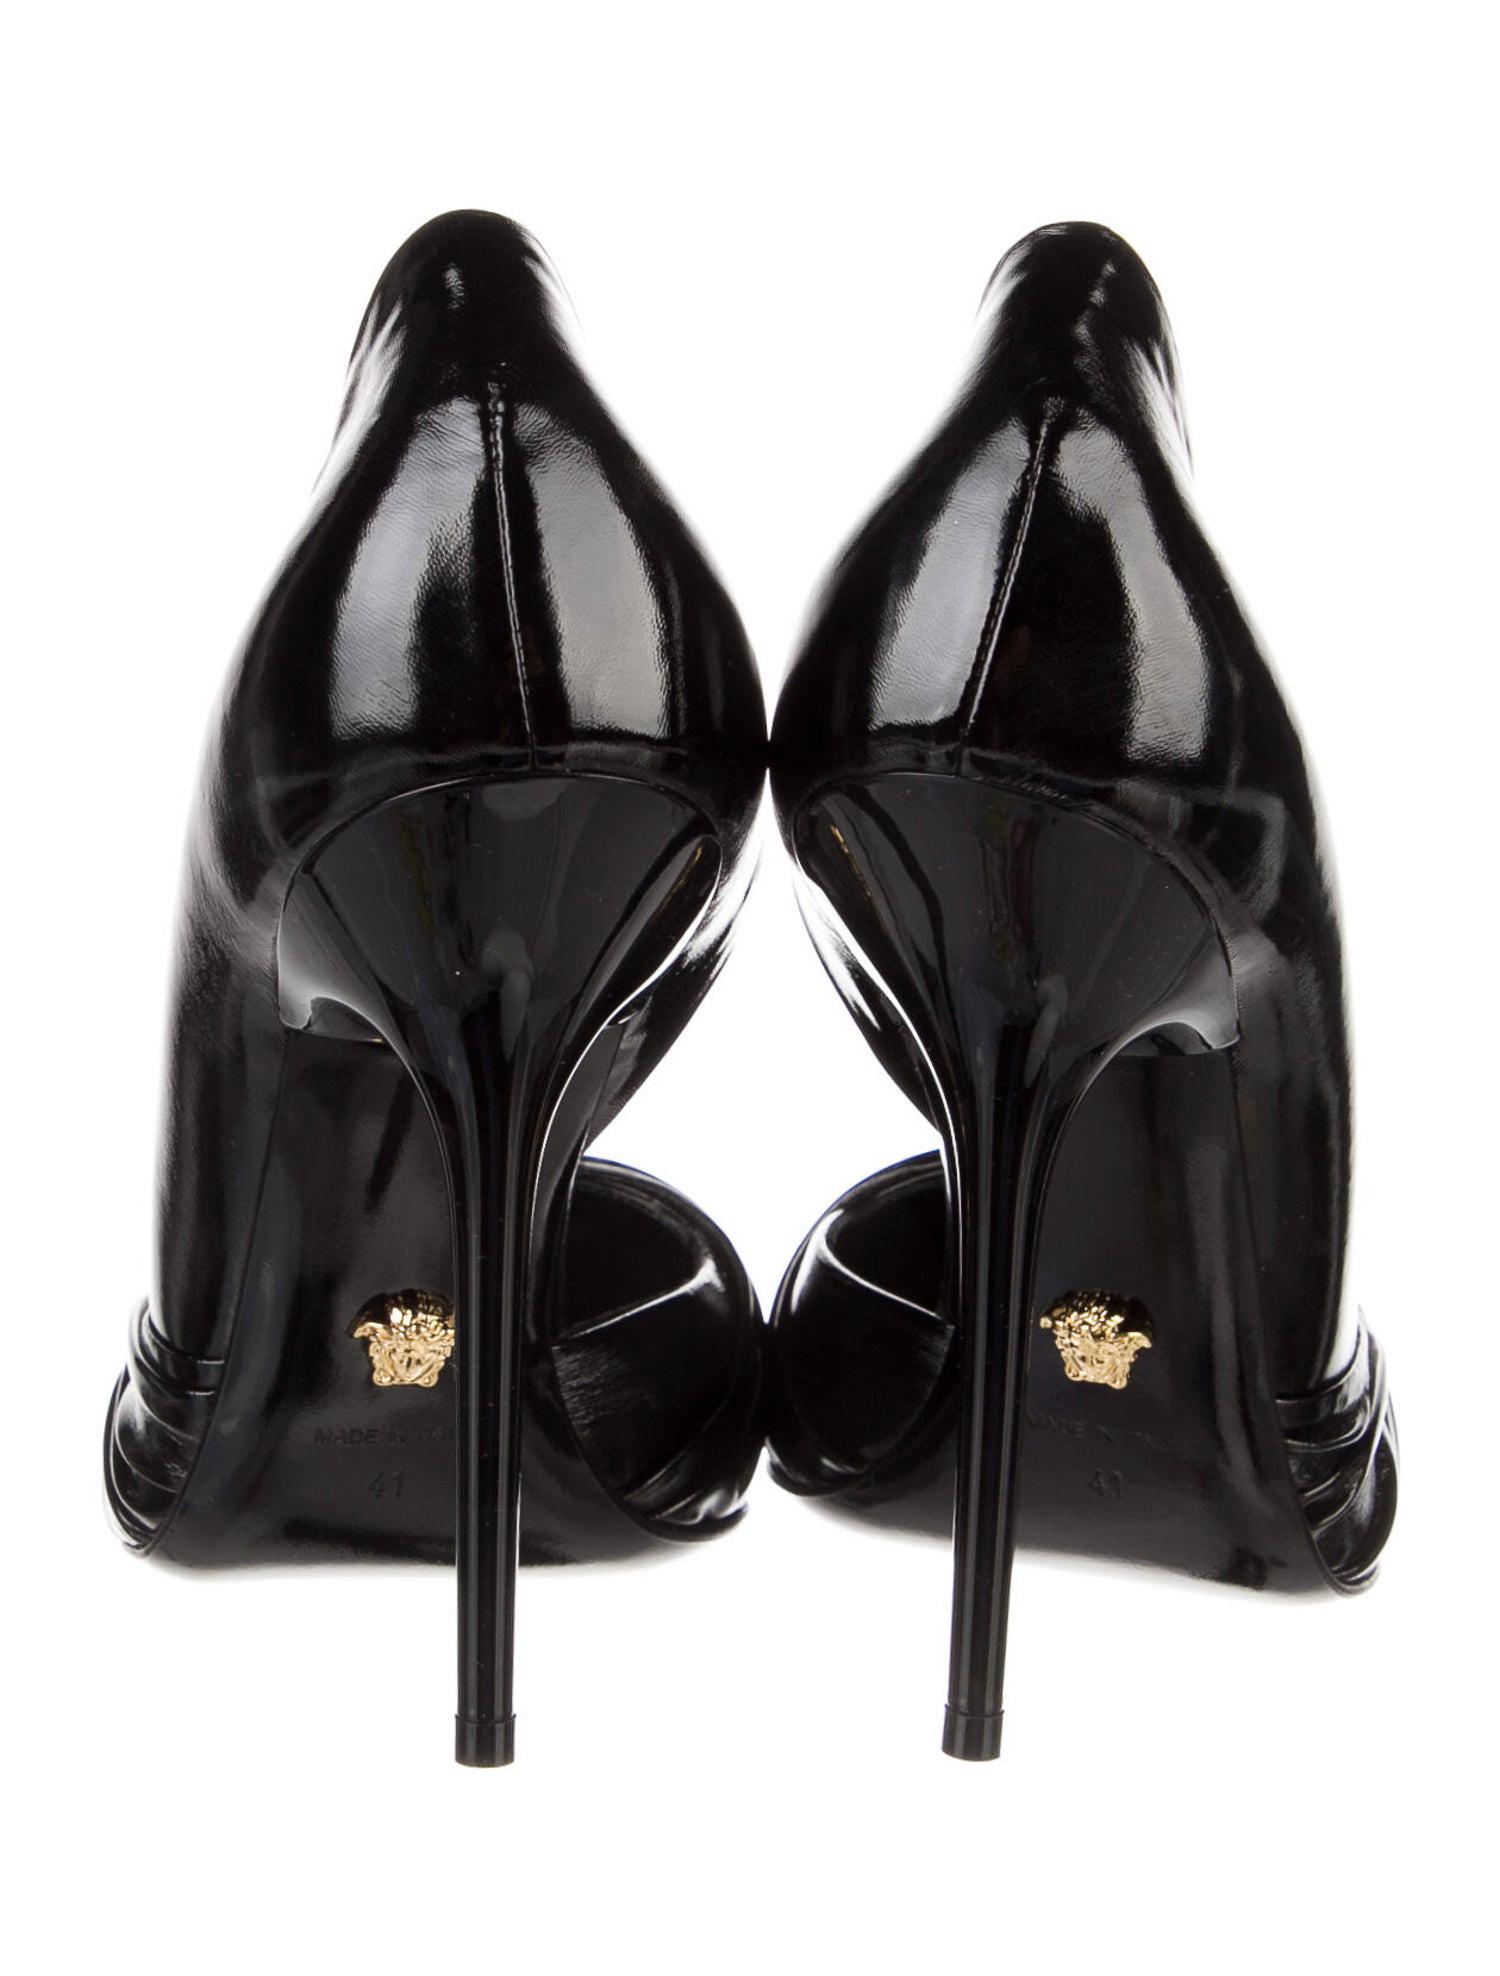 versace high heels